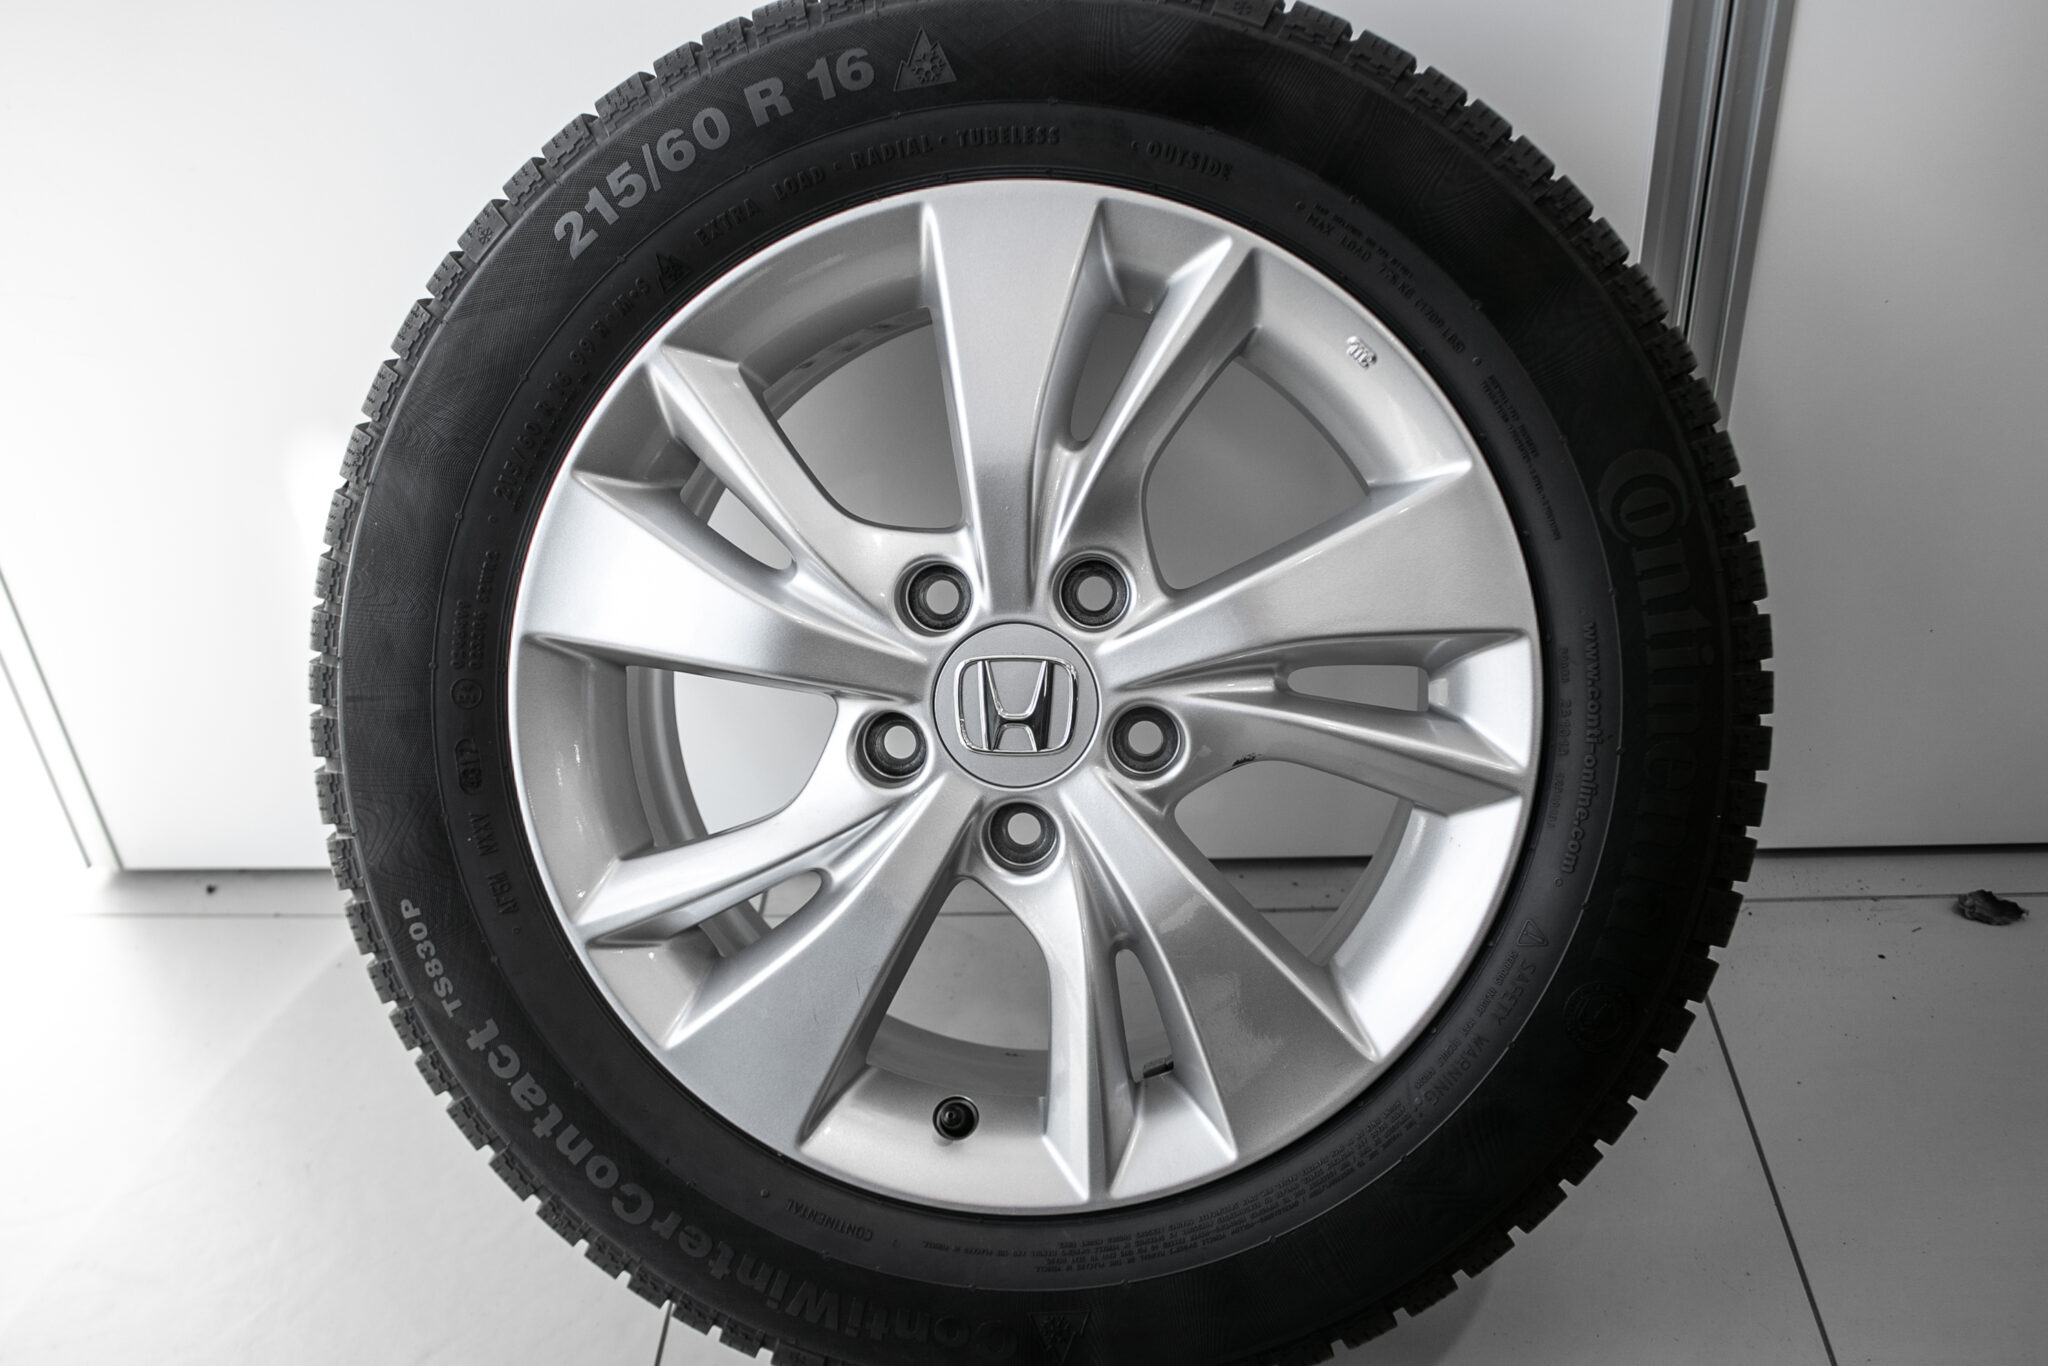 16" Winterwielen voor de Honda HR-V vanaf 2018 t/m 2020 
€599,-
Gebruikt. Profieldiepte: 7.2mm - 8mm